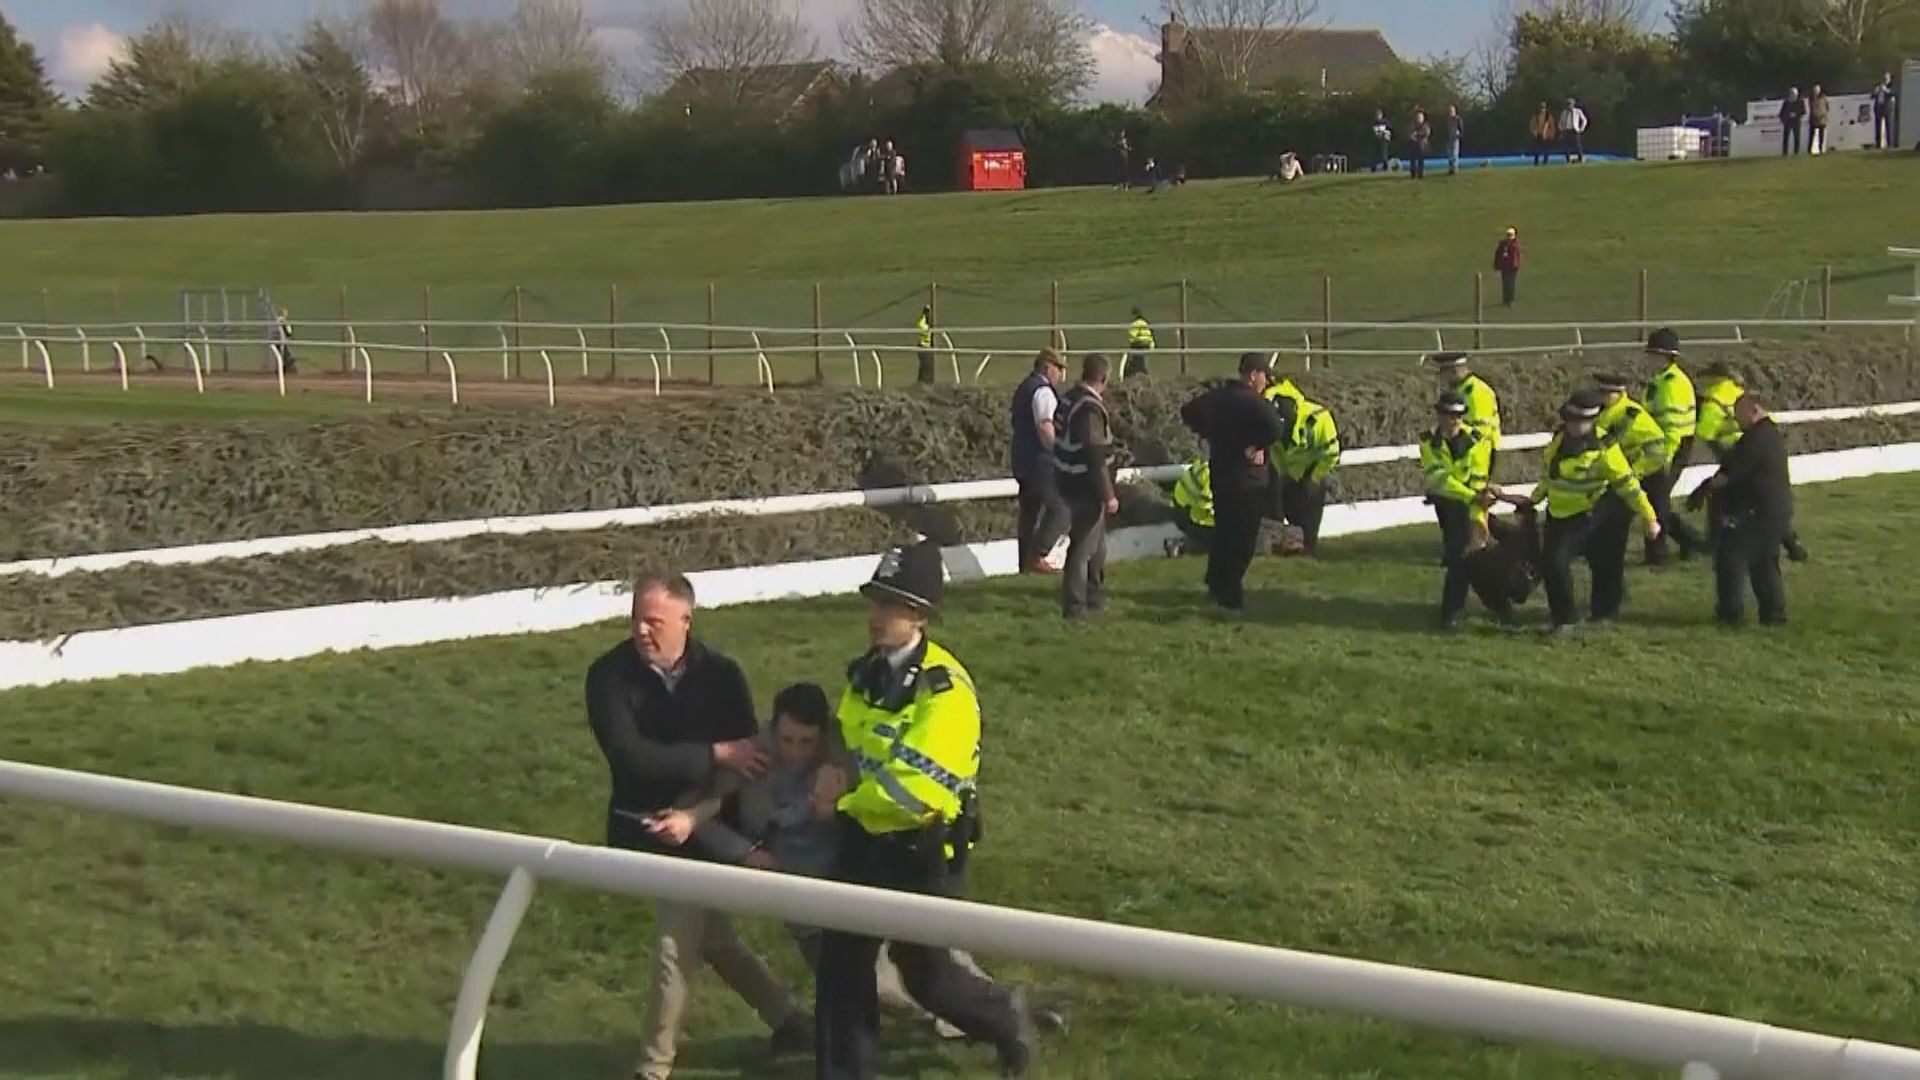 英國動物權益人士闖入馬場試圖阻止比賽　警拘118人